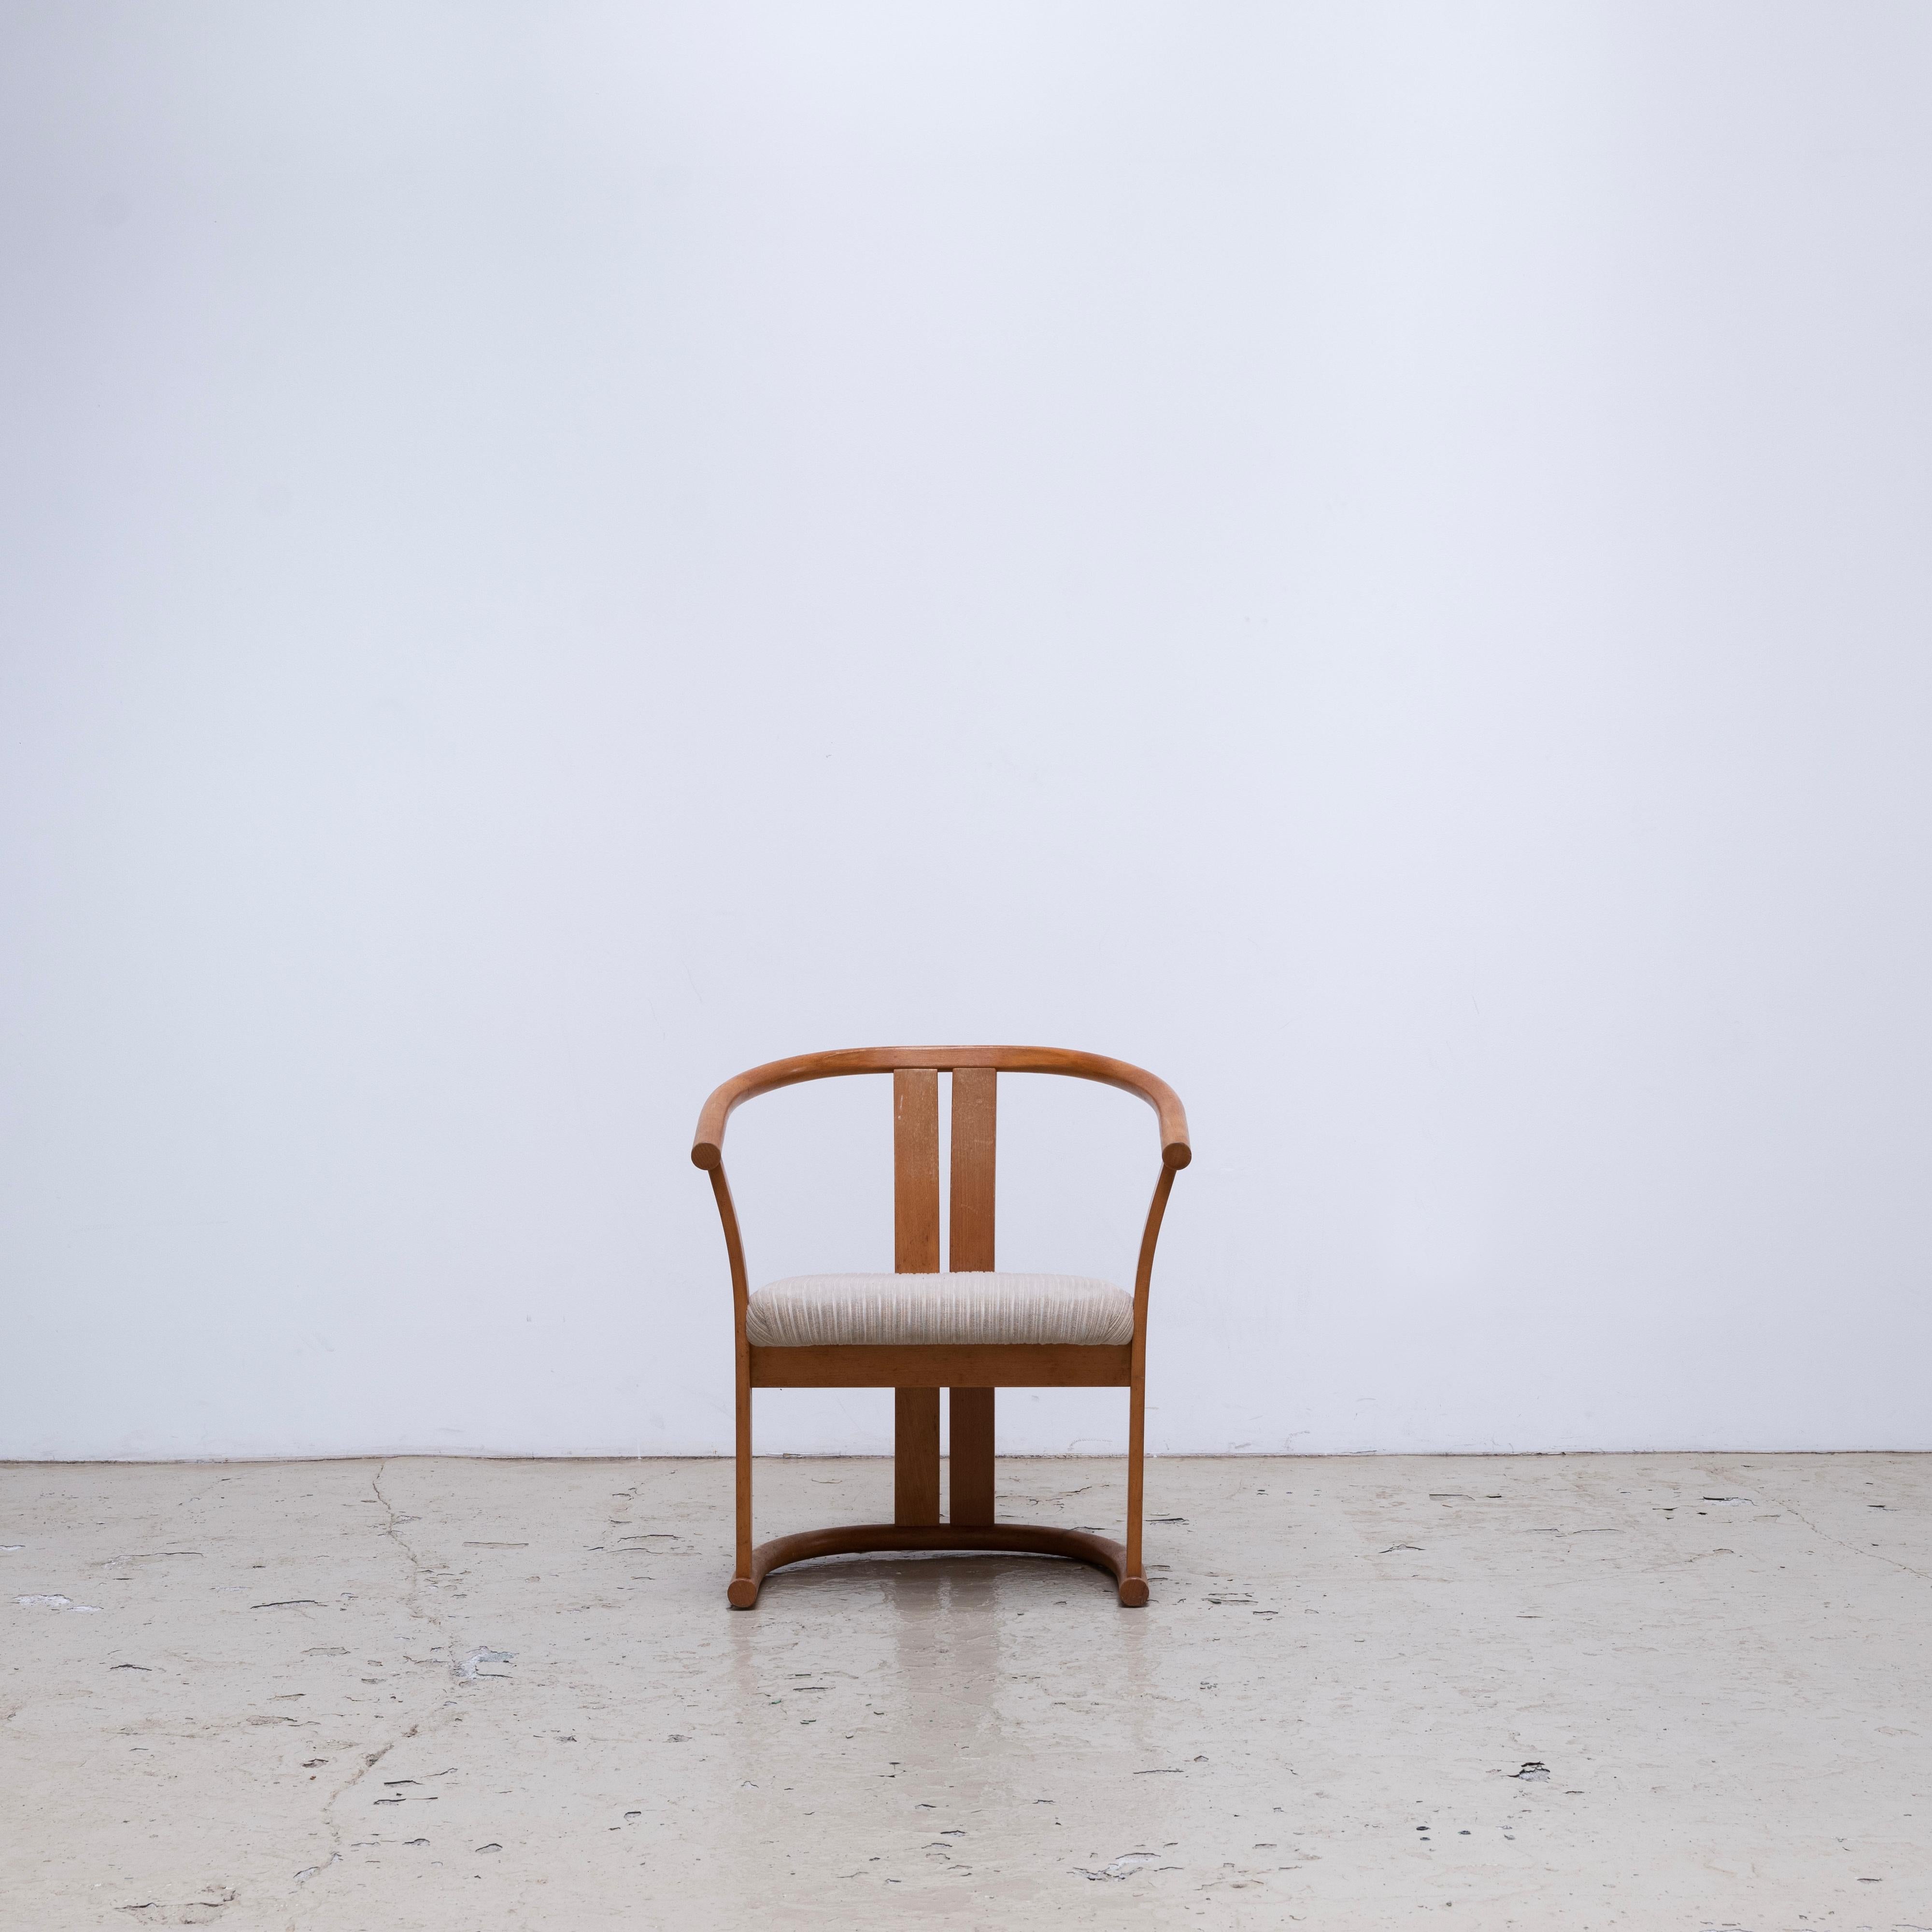 Ein Paar Sessel, entworfen von Isamu Kenmochi für Akita Woodworking in den 1970er Jahren.
Der Zustand ist sehr gut, mit Herstelleretiketten auf beiden Sesseln.

Es werden 4 Sets verkauft.